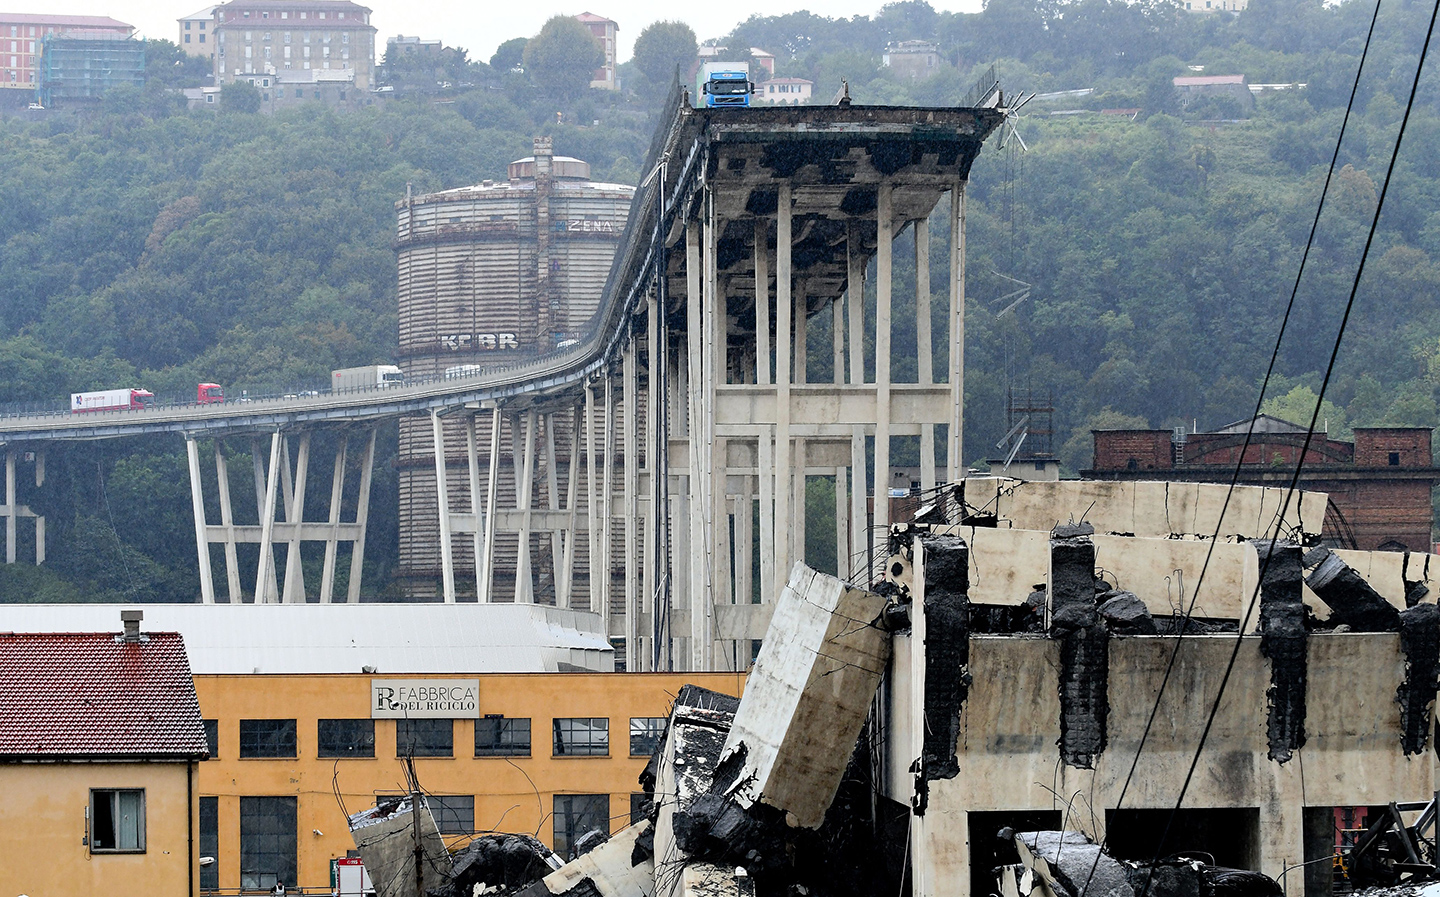 At least 30 killed in devastating bridge collapse in Genoa